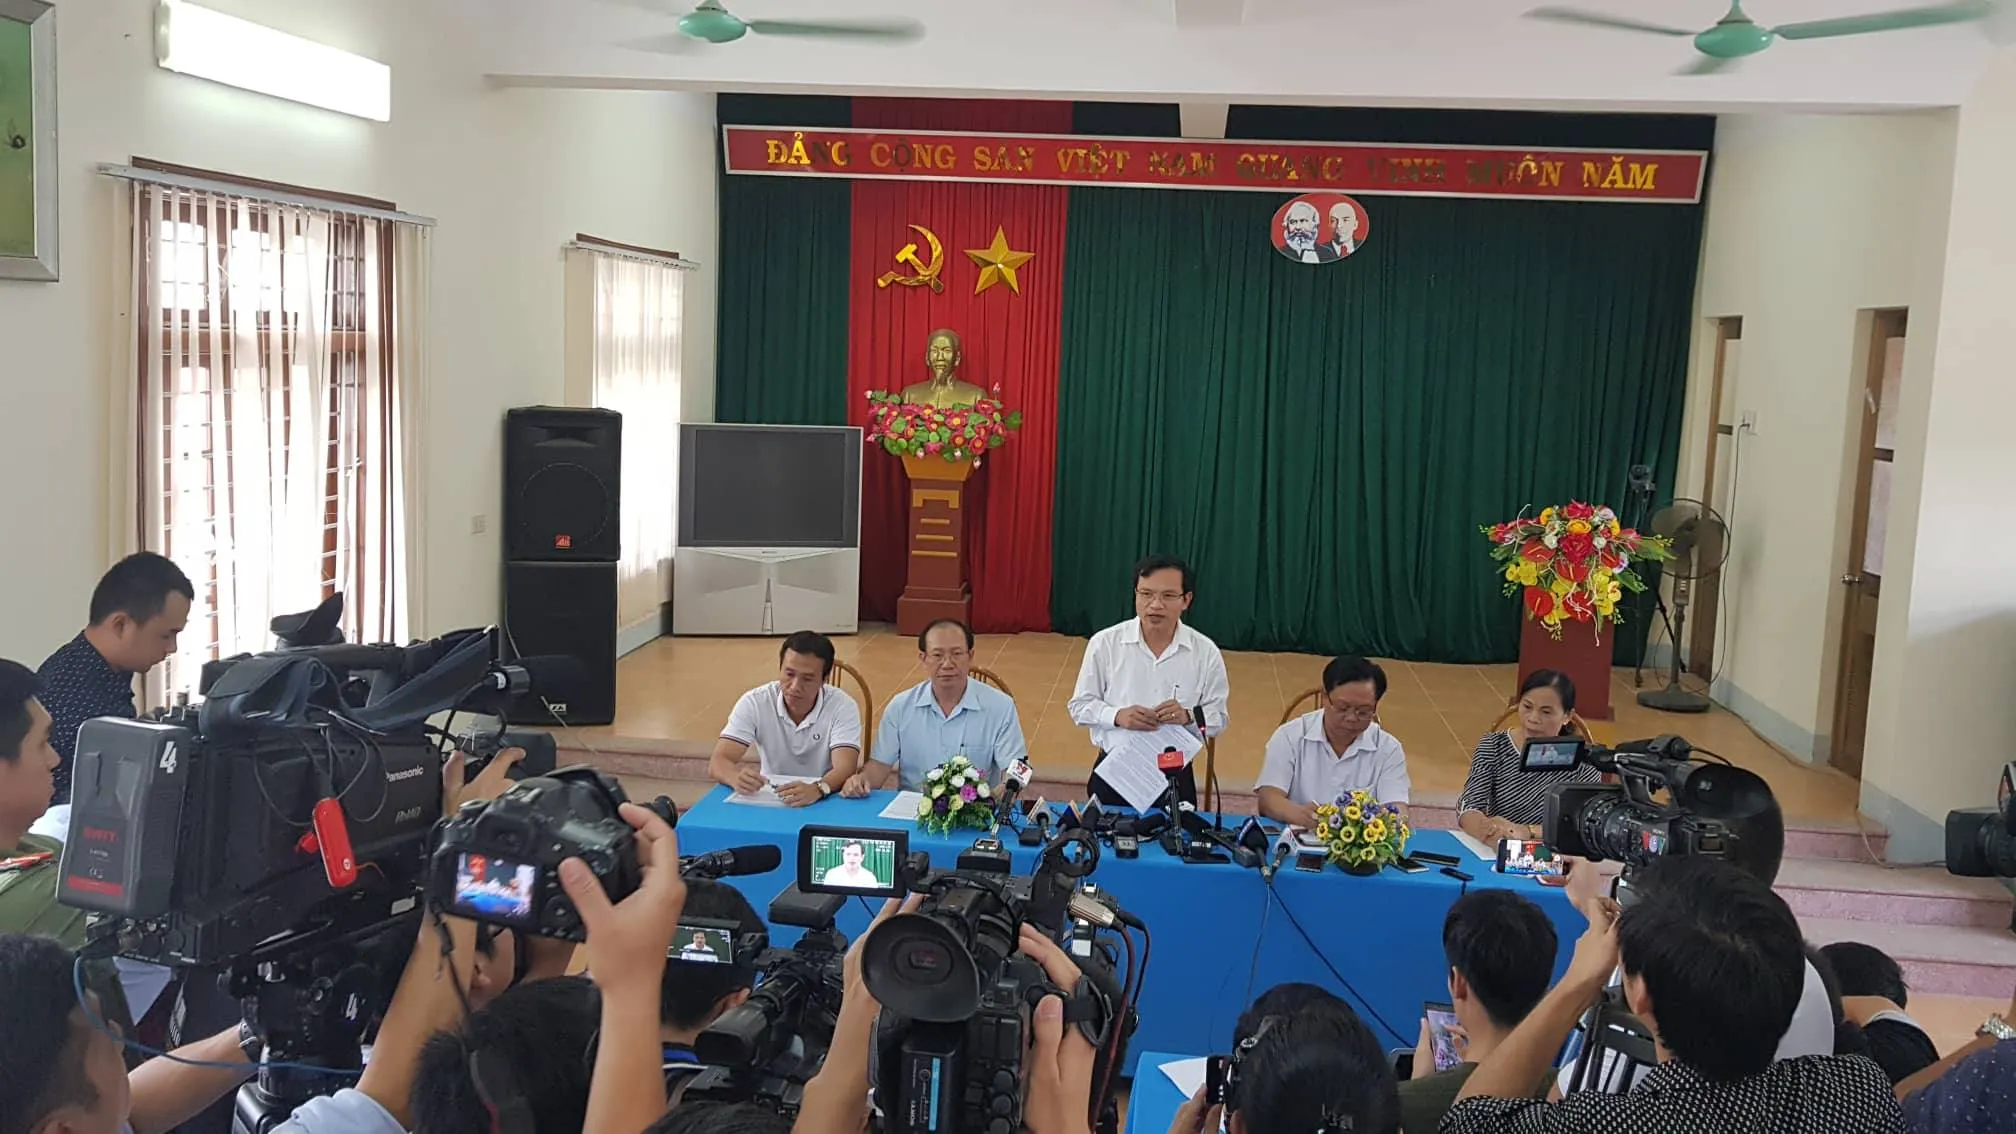 Ông Mai Văn Trinh chủ trì buổi họp báo công bố kết luận điểm thi cao bất thường ở Sơn La trưa 23/7.